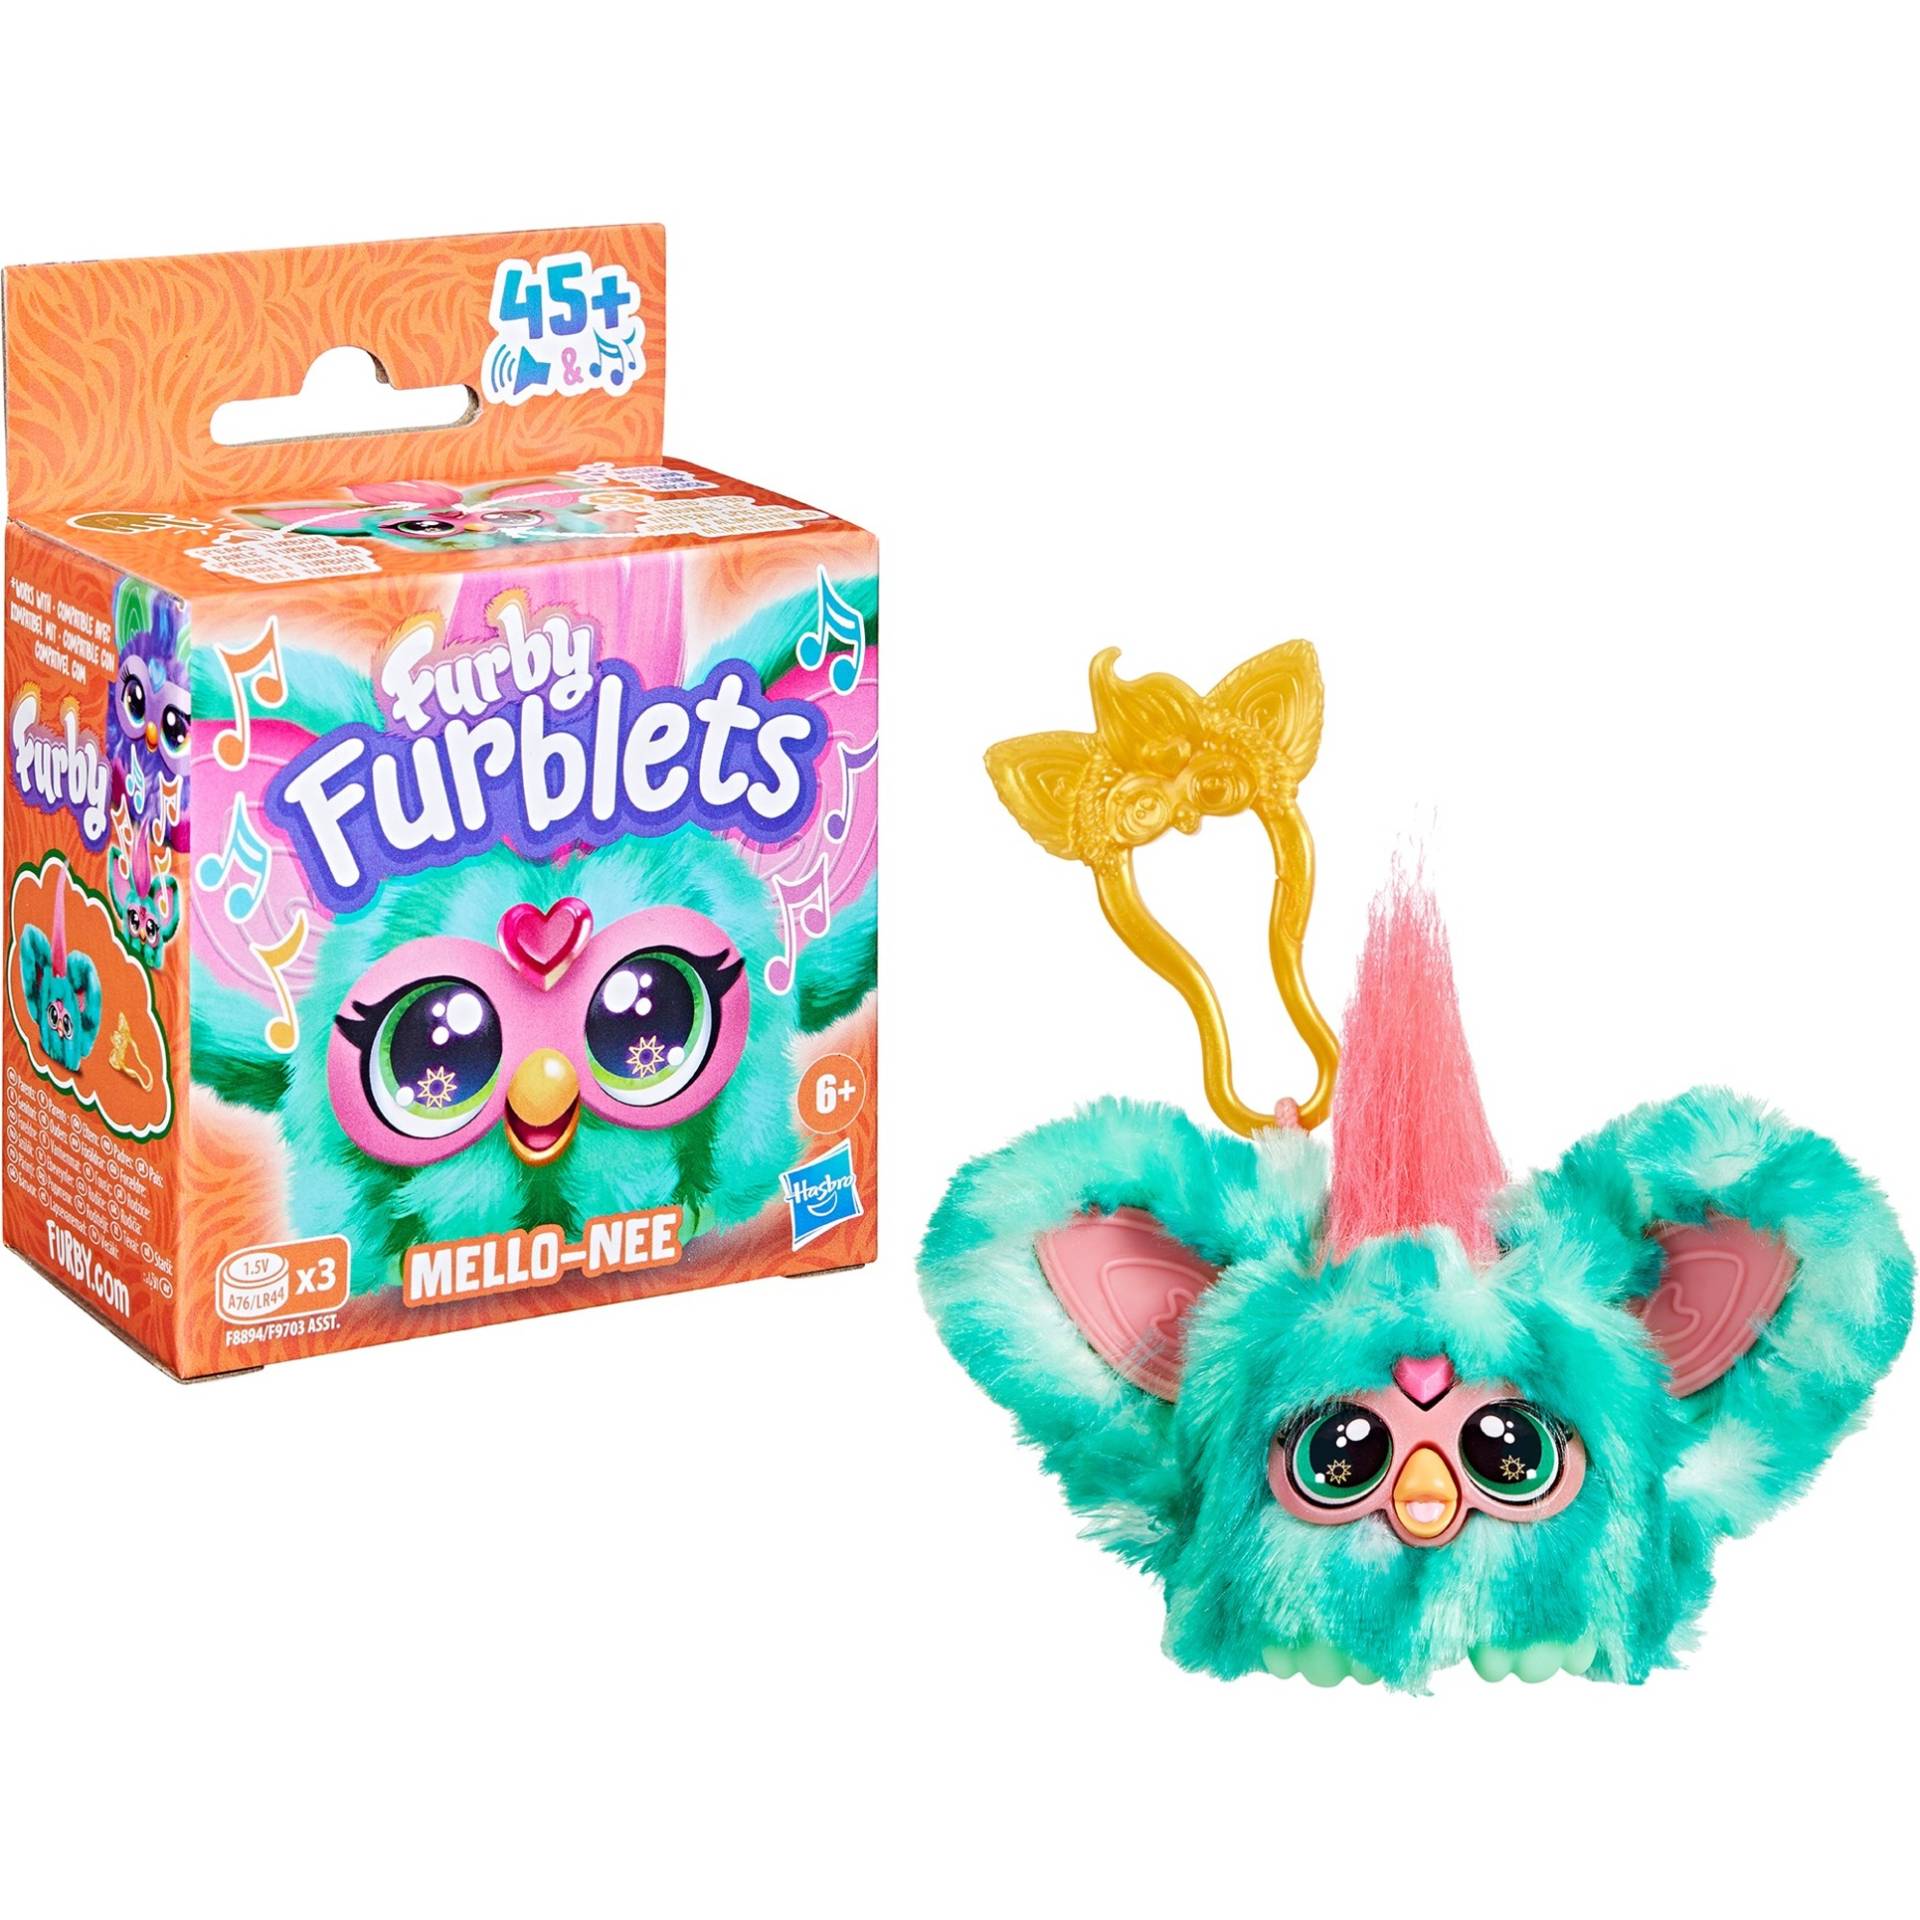 Furby Furblets Mello-Nee, Kuscheltier von Hasbro